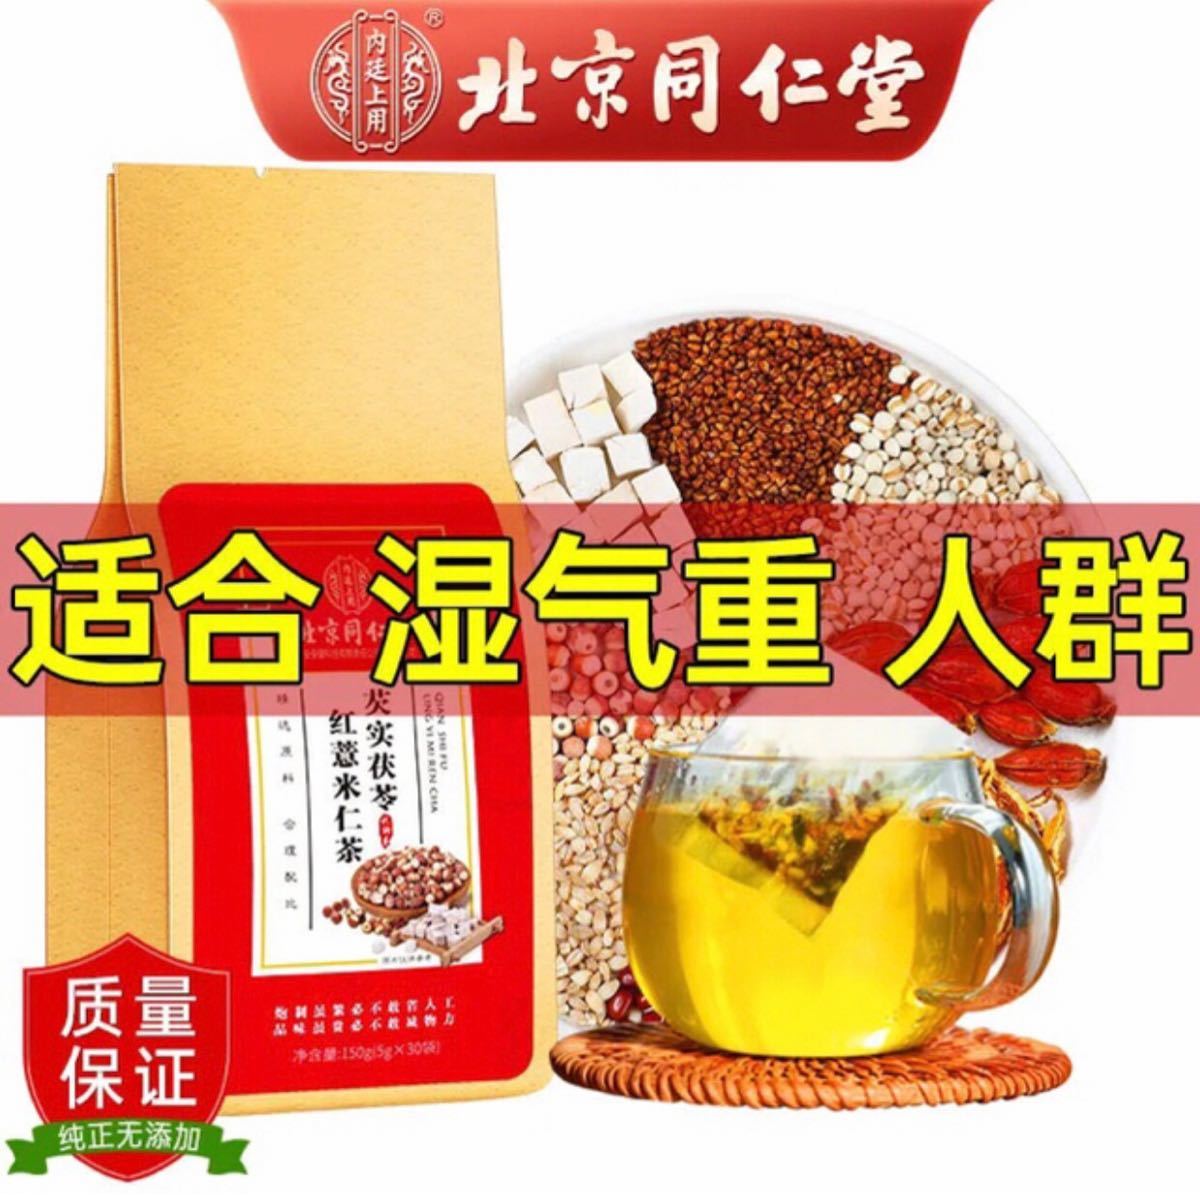 北京同仁堂 除湿茶 漢方茶 ハトムギ茶赤豆体内に湿邪を取れるお茶です。2個60P